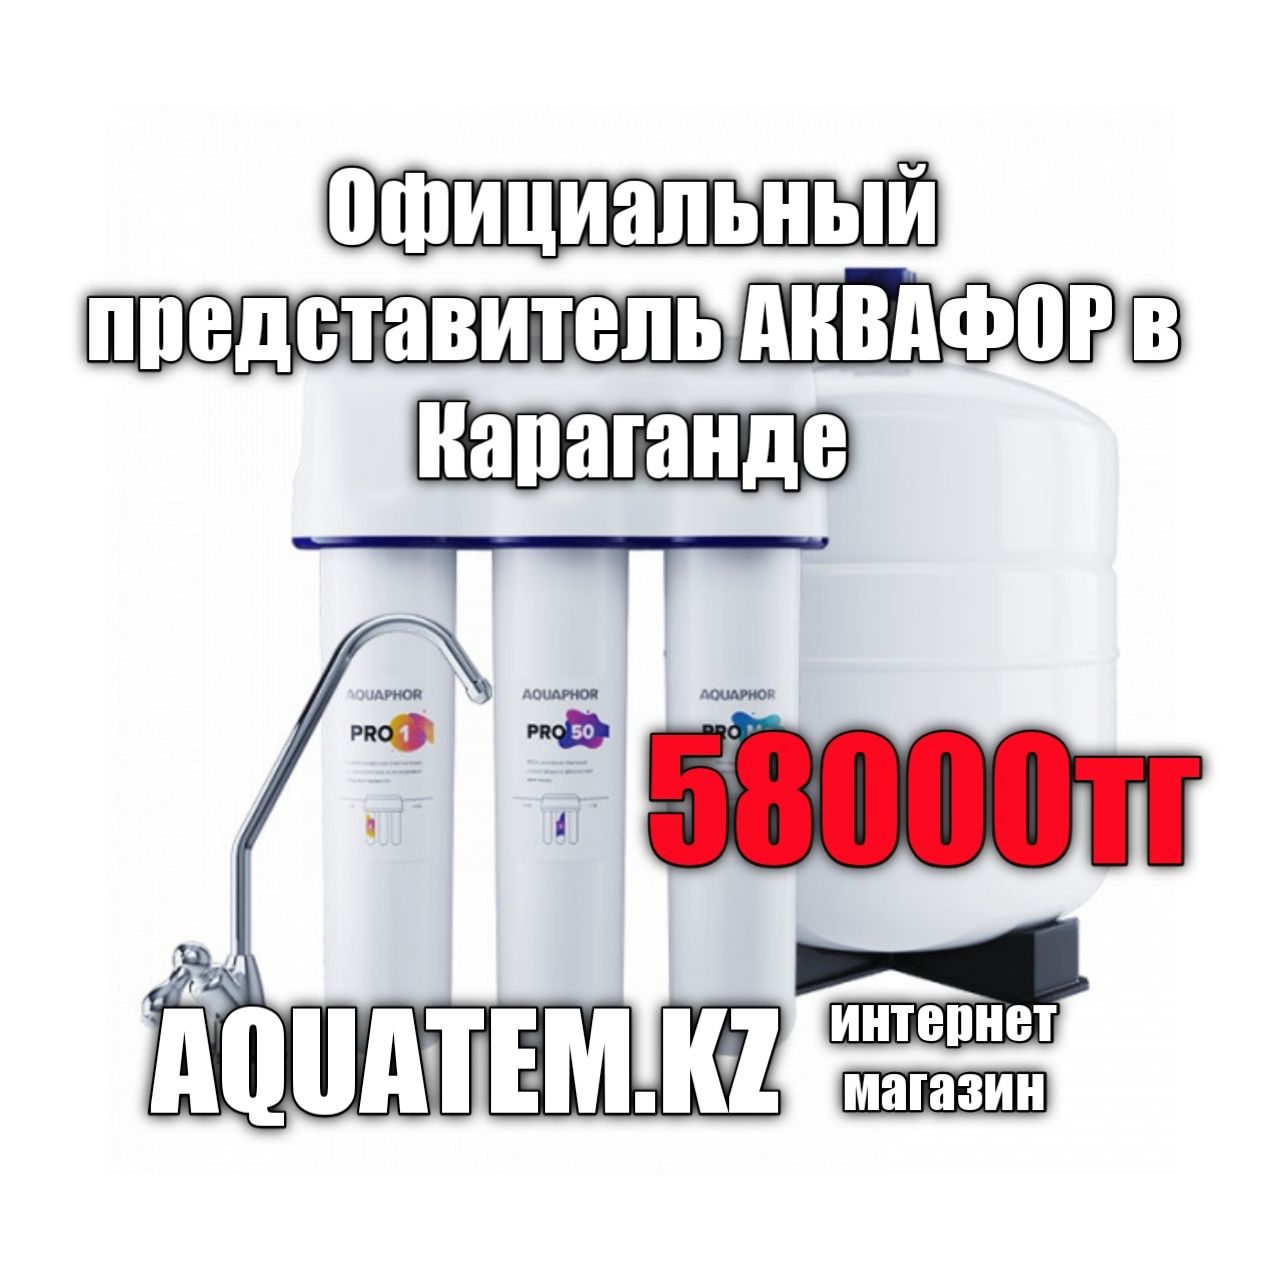 Фильтр для воды ОСМО PRO 50